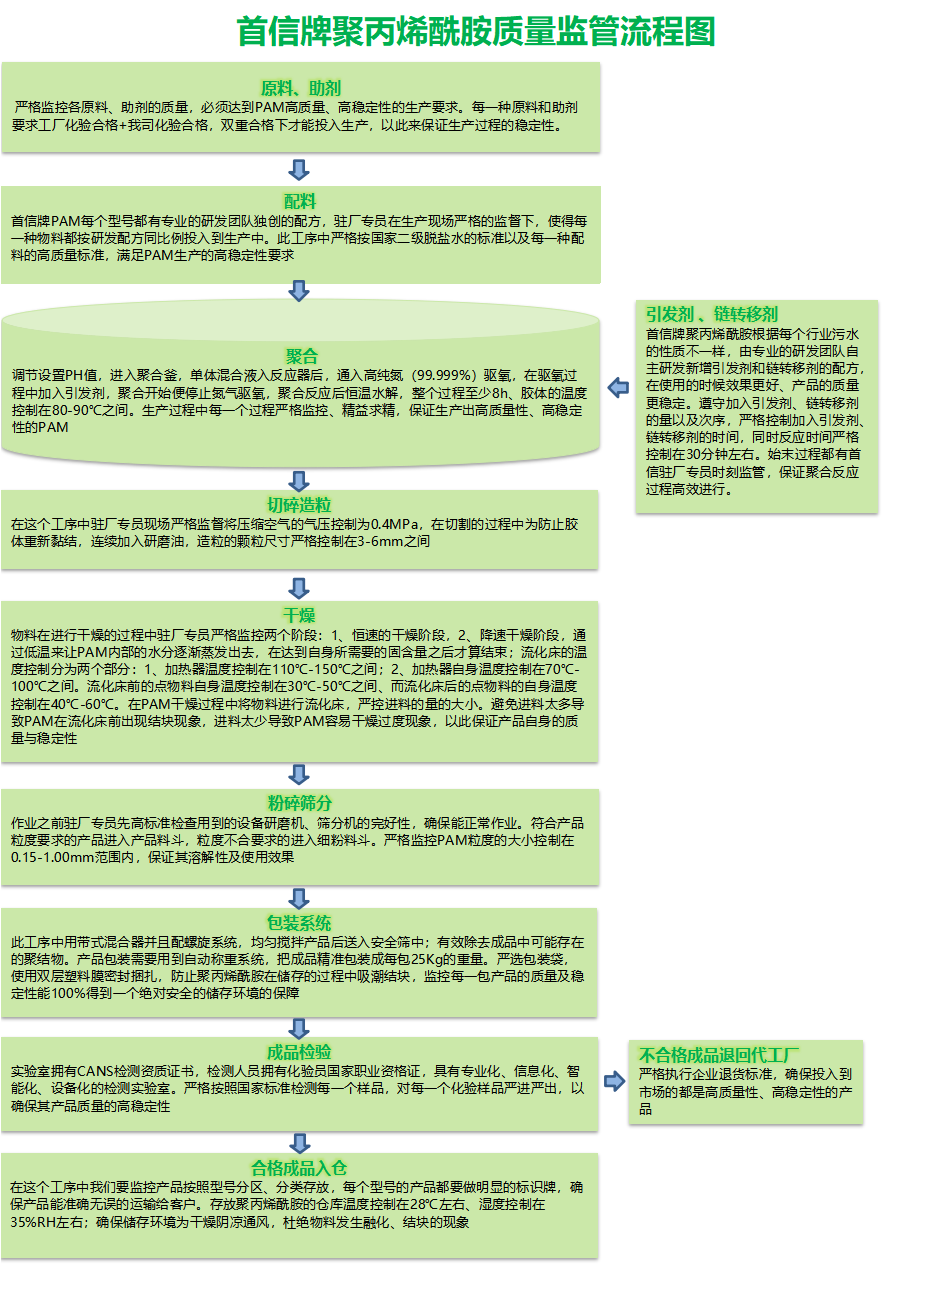 质量监管流程图（中文）.png